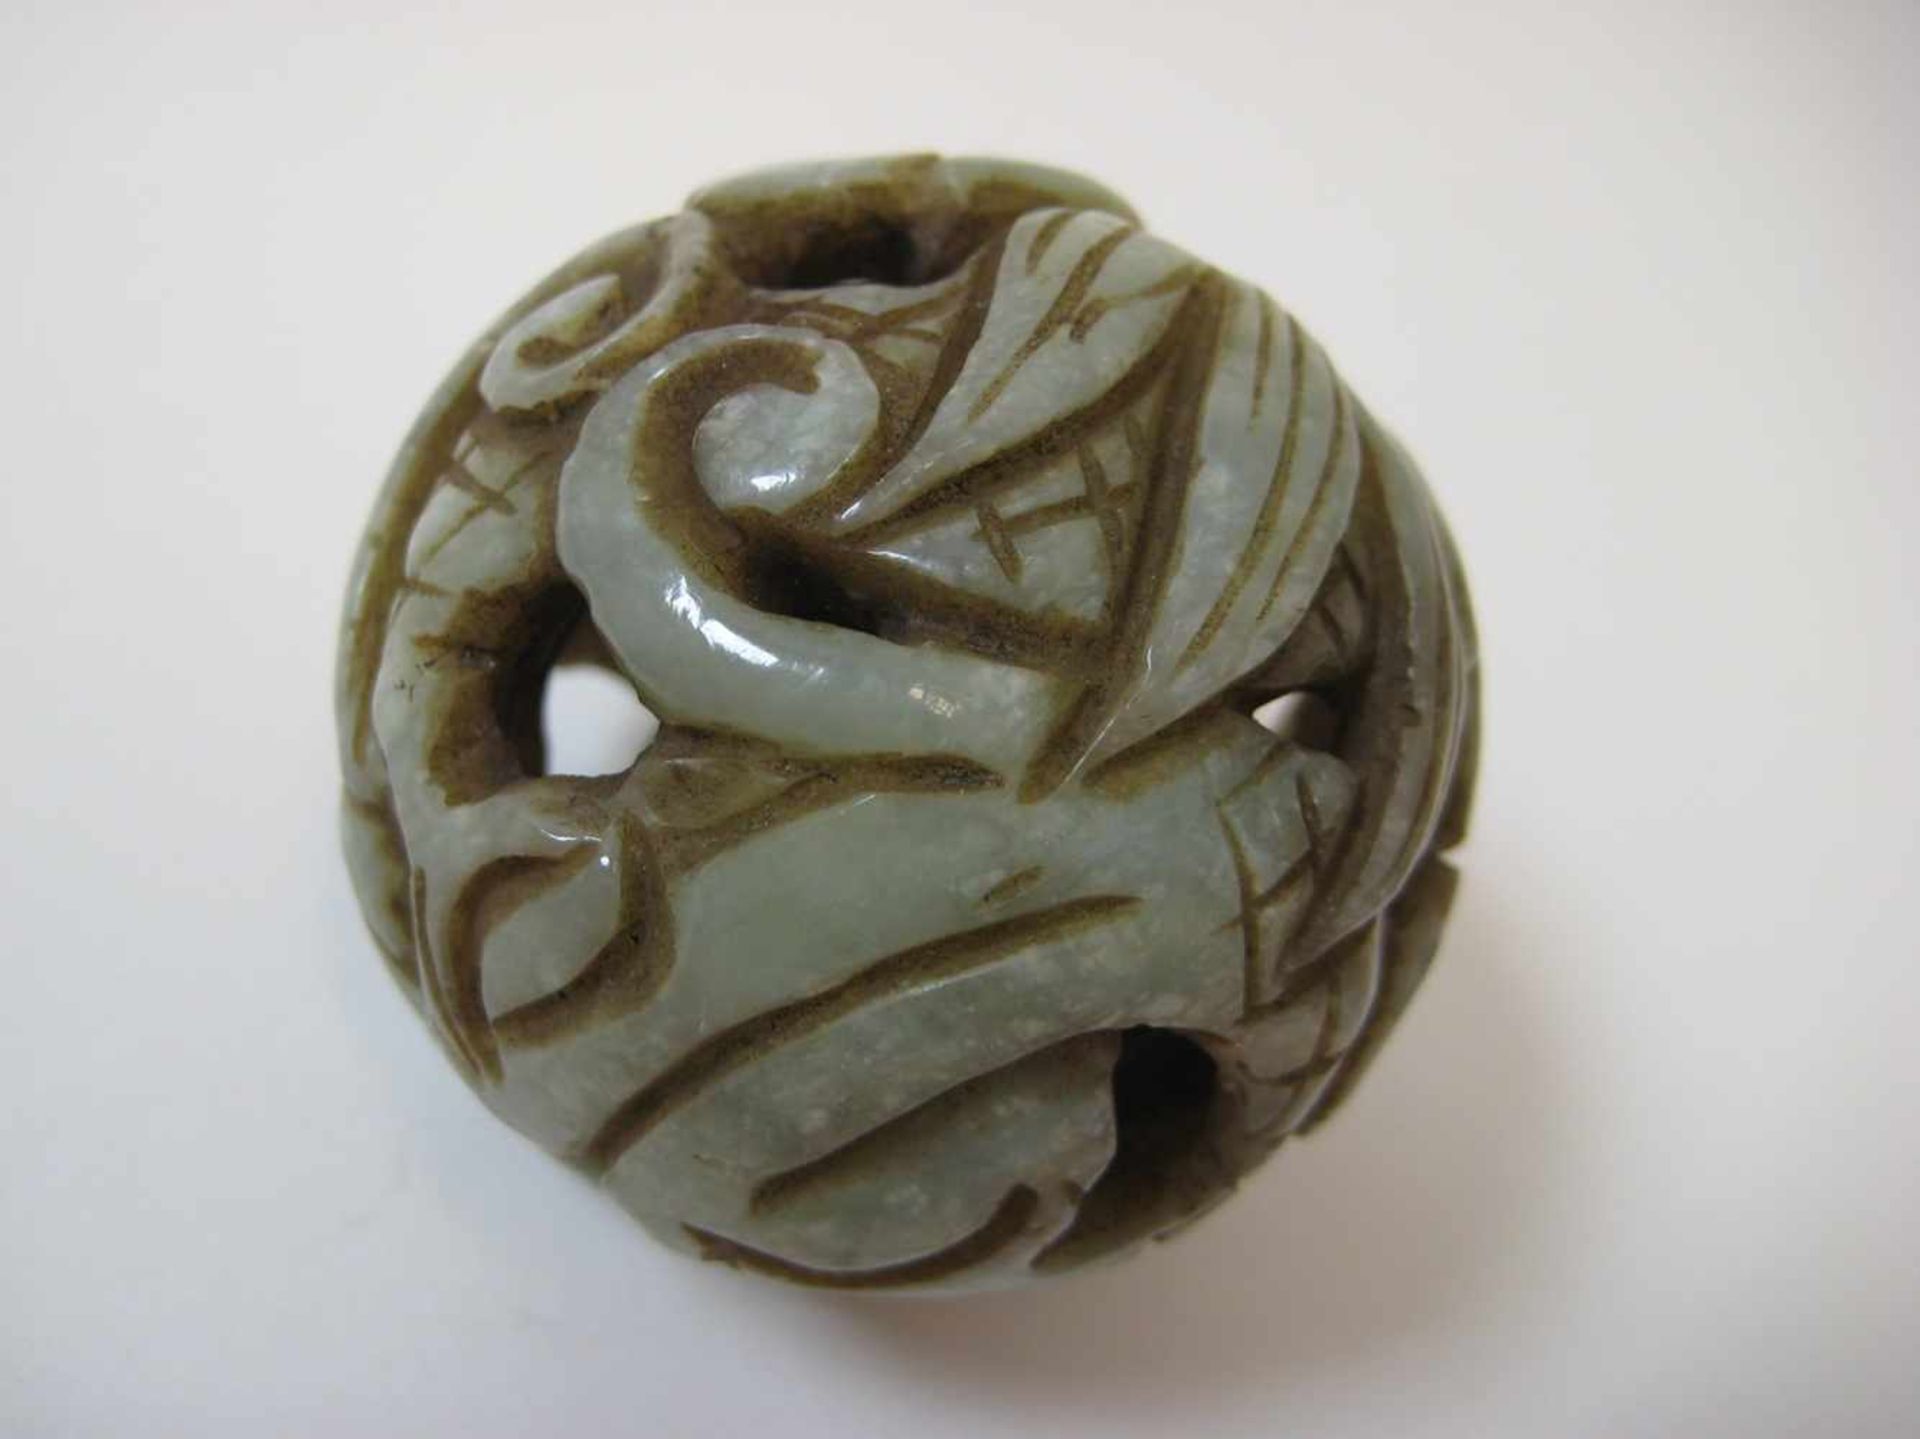 Anhänger mit Innenkugel, China, grünliche Jade beschnitzt, d 5 cm.- - -19.00 % buyer's premium on - Image 2 of 2